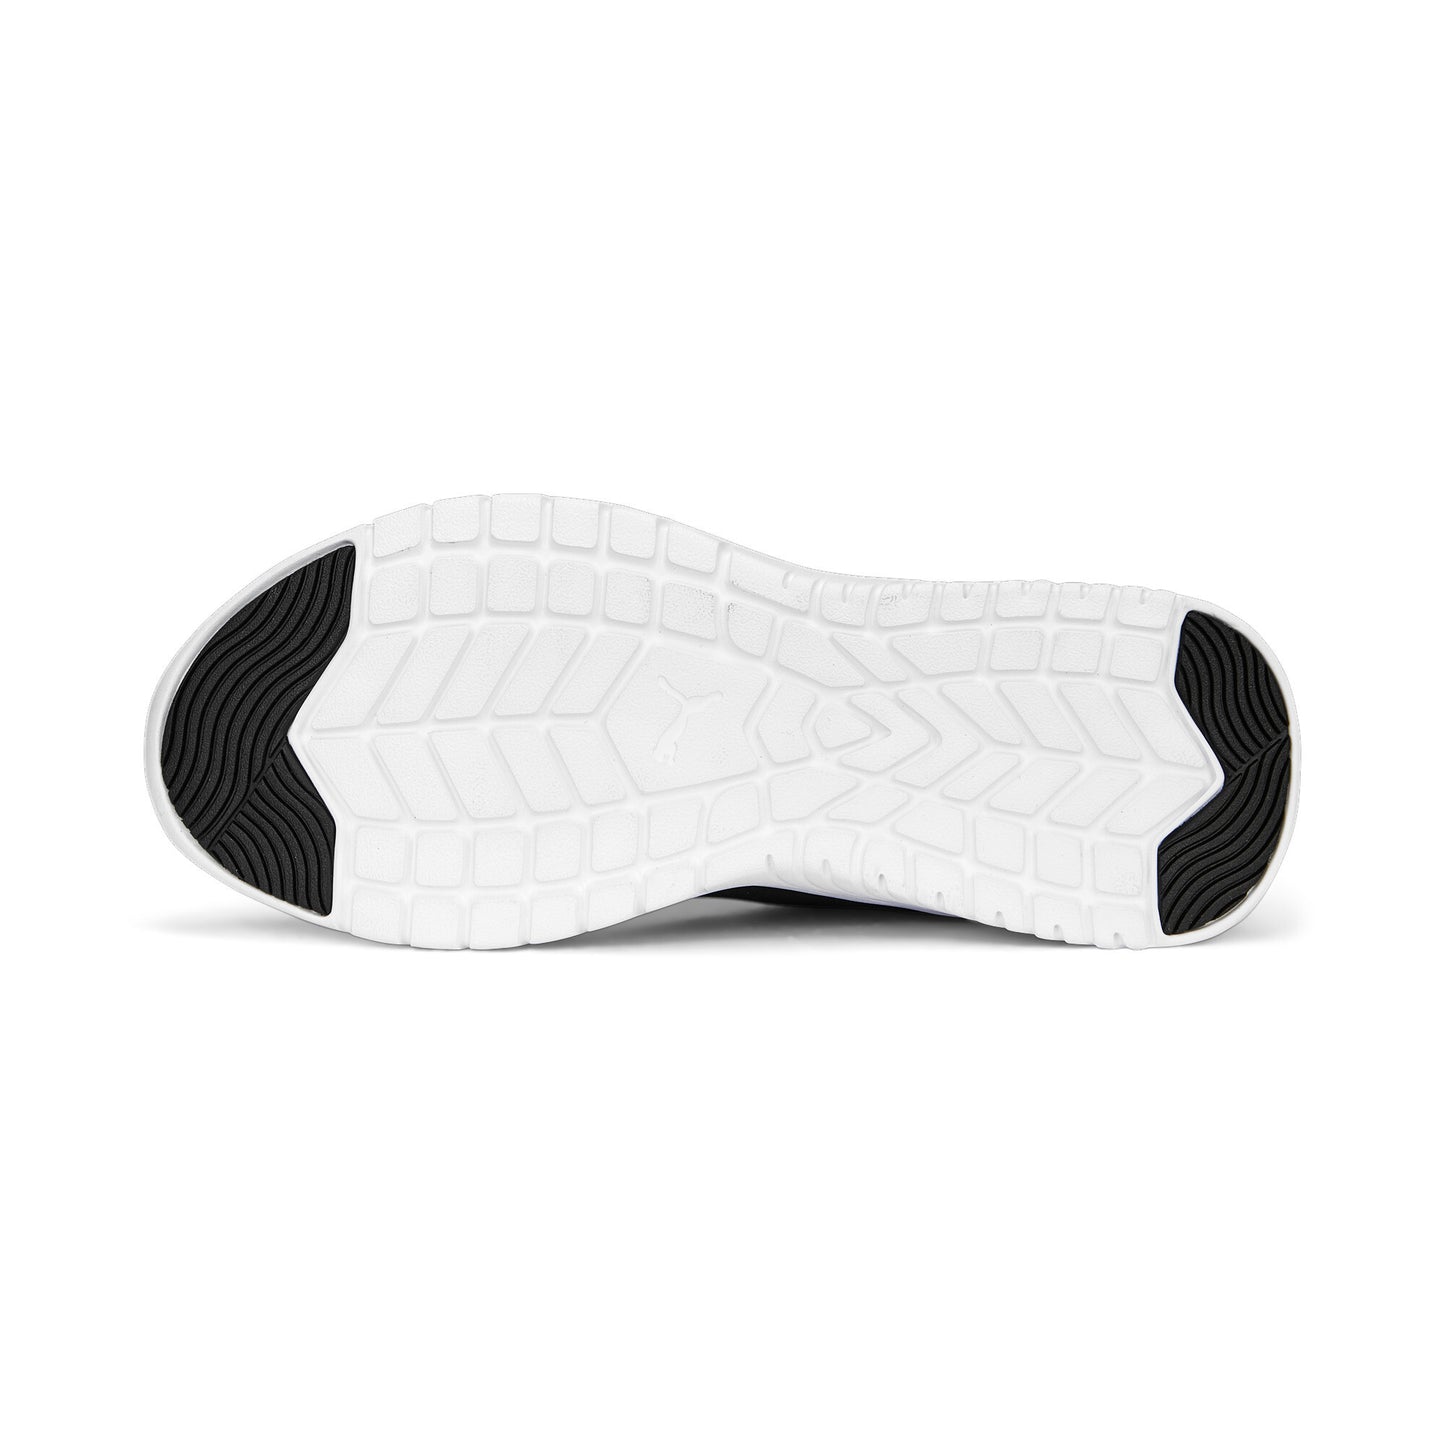 נעלי ספורט לנשים Remedie Slip-On בצבע שחור ולבן